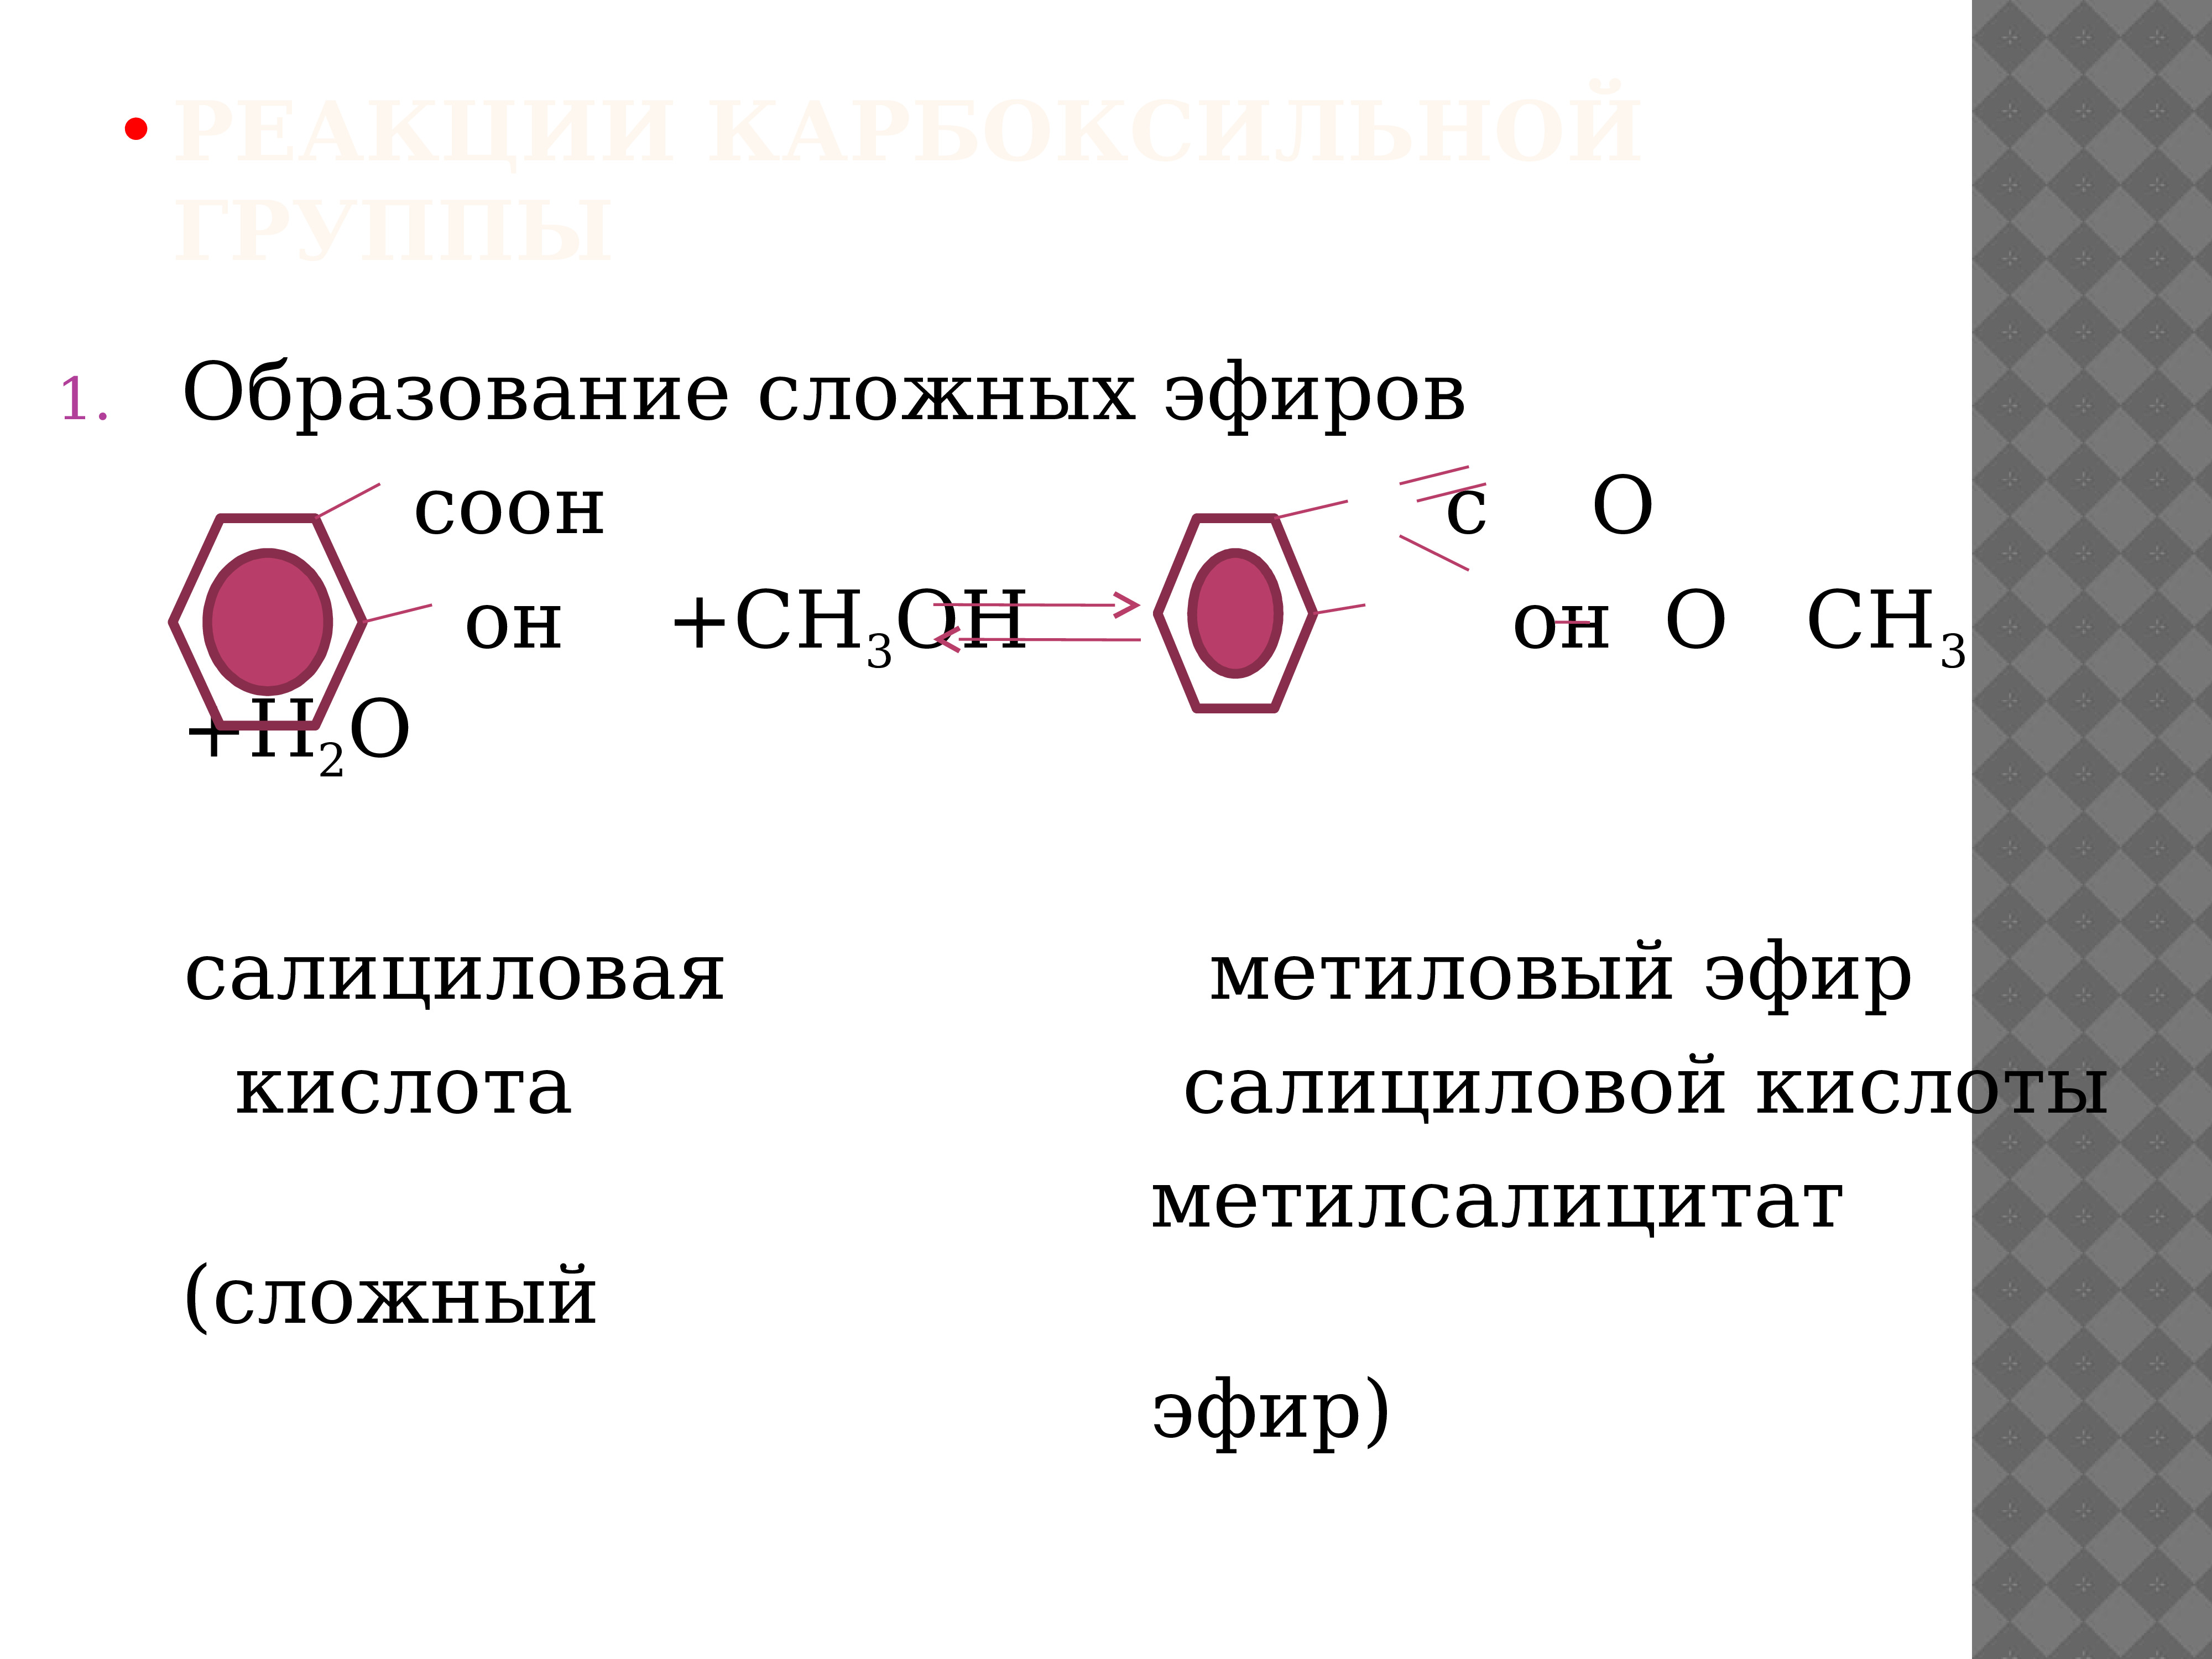 Реакция уксусной кислоты и метилового спирта. Салициловая кислота + c6h5cocl. Салициловая кислота с ch3cocl. Образование сложных эфиров из салициловой кислоты.